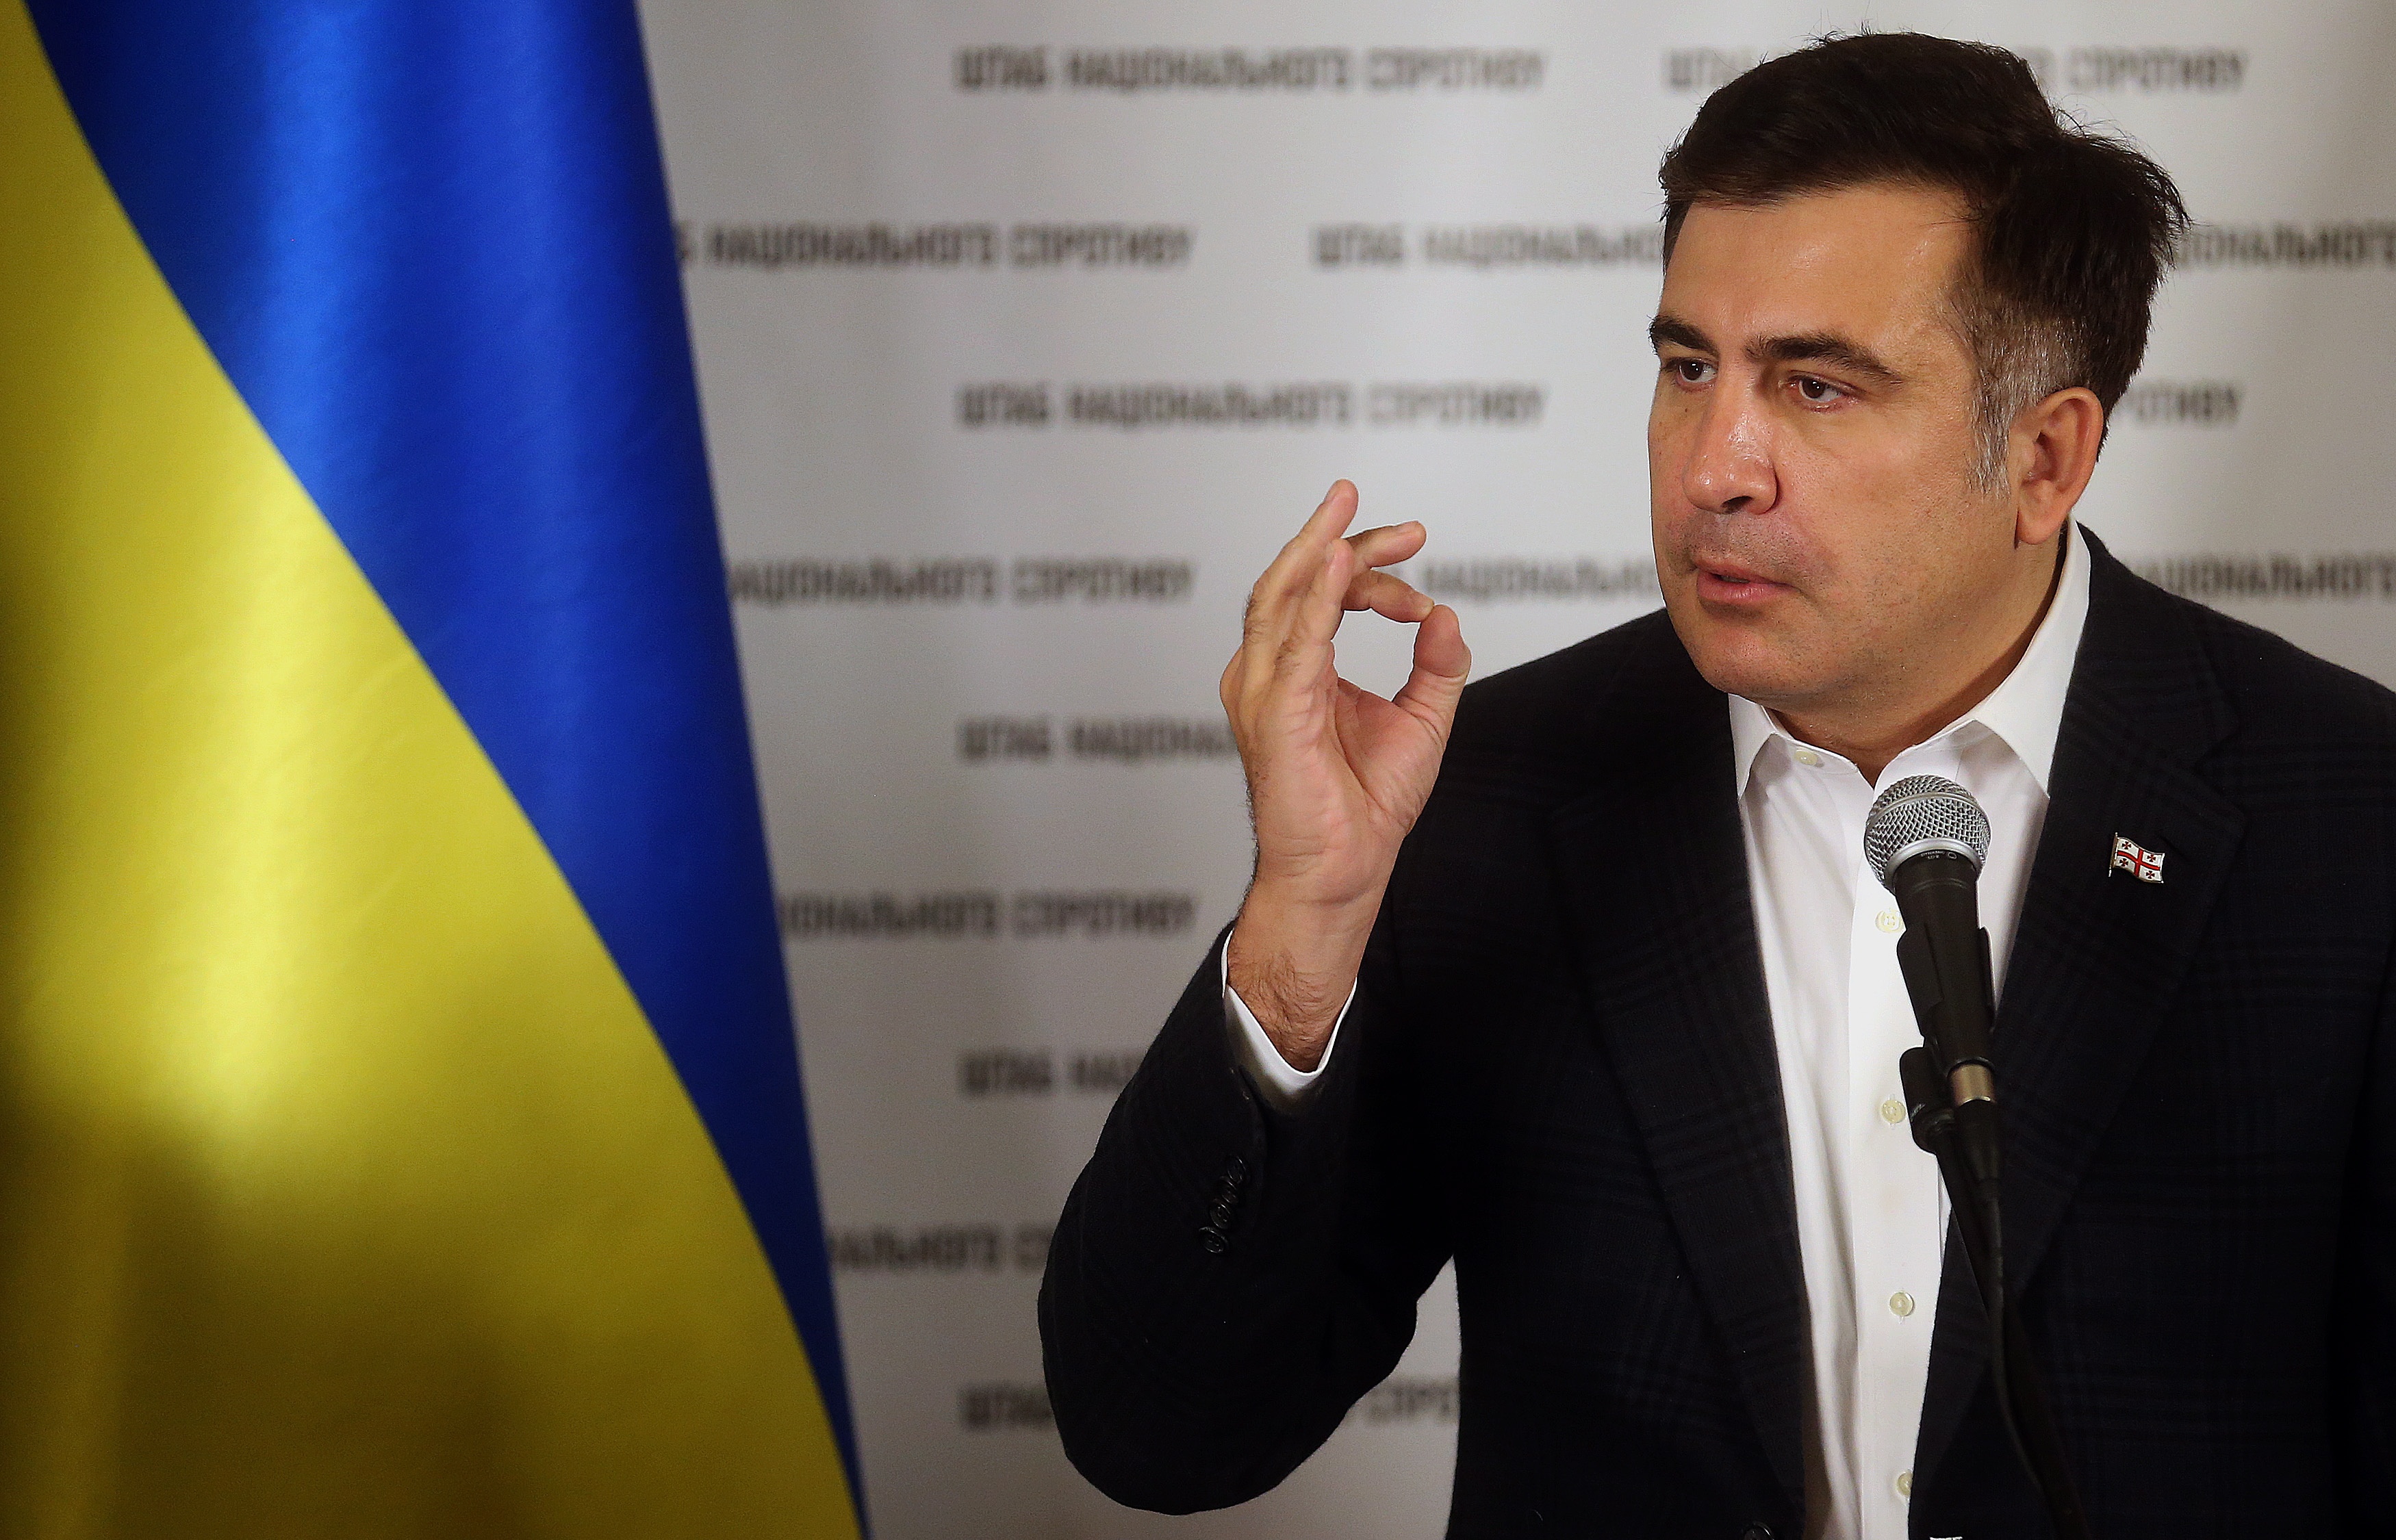 Саакашвили со скандалом уволил собственного заместителя